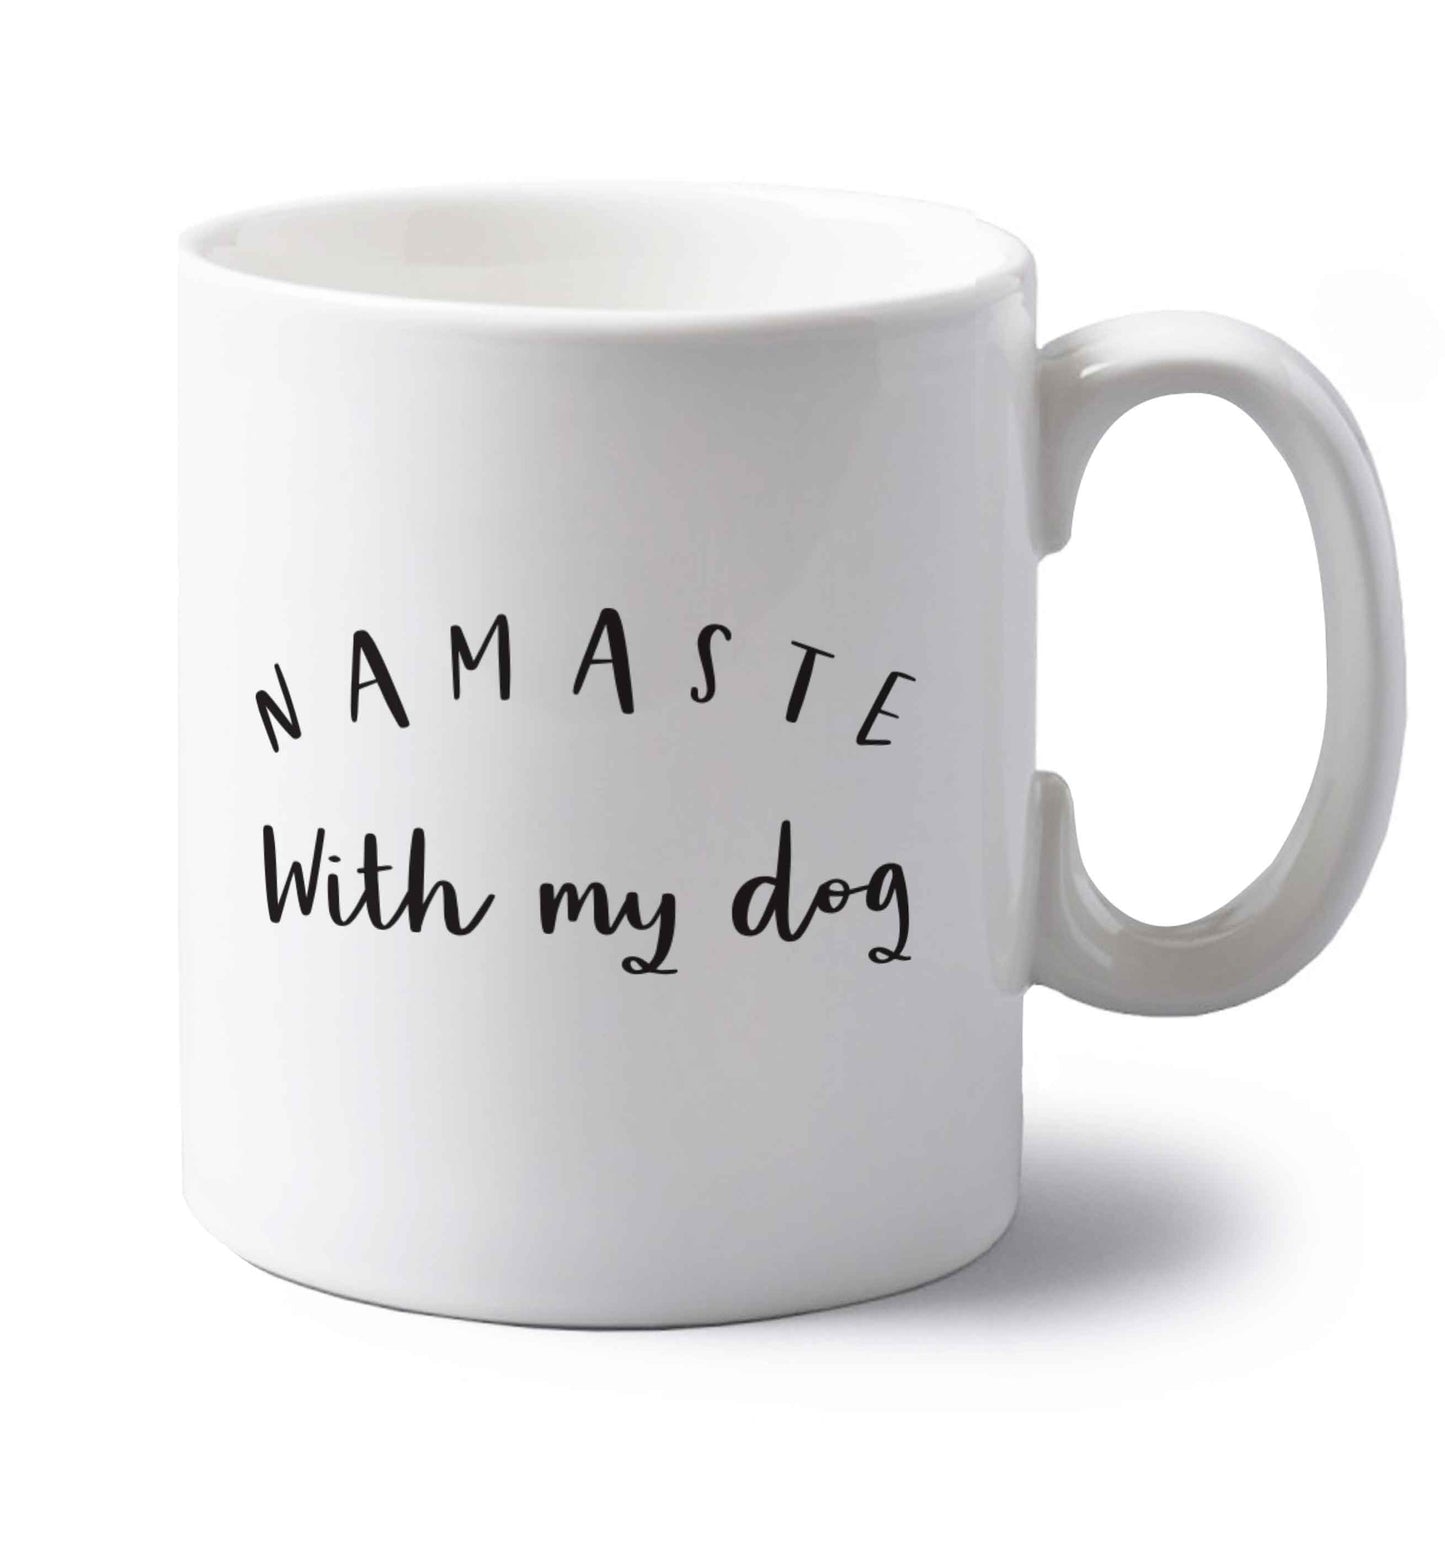 Namaste with my dog left handed white ceramic mug 